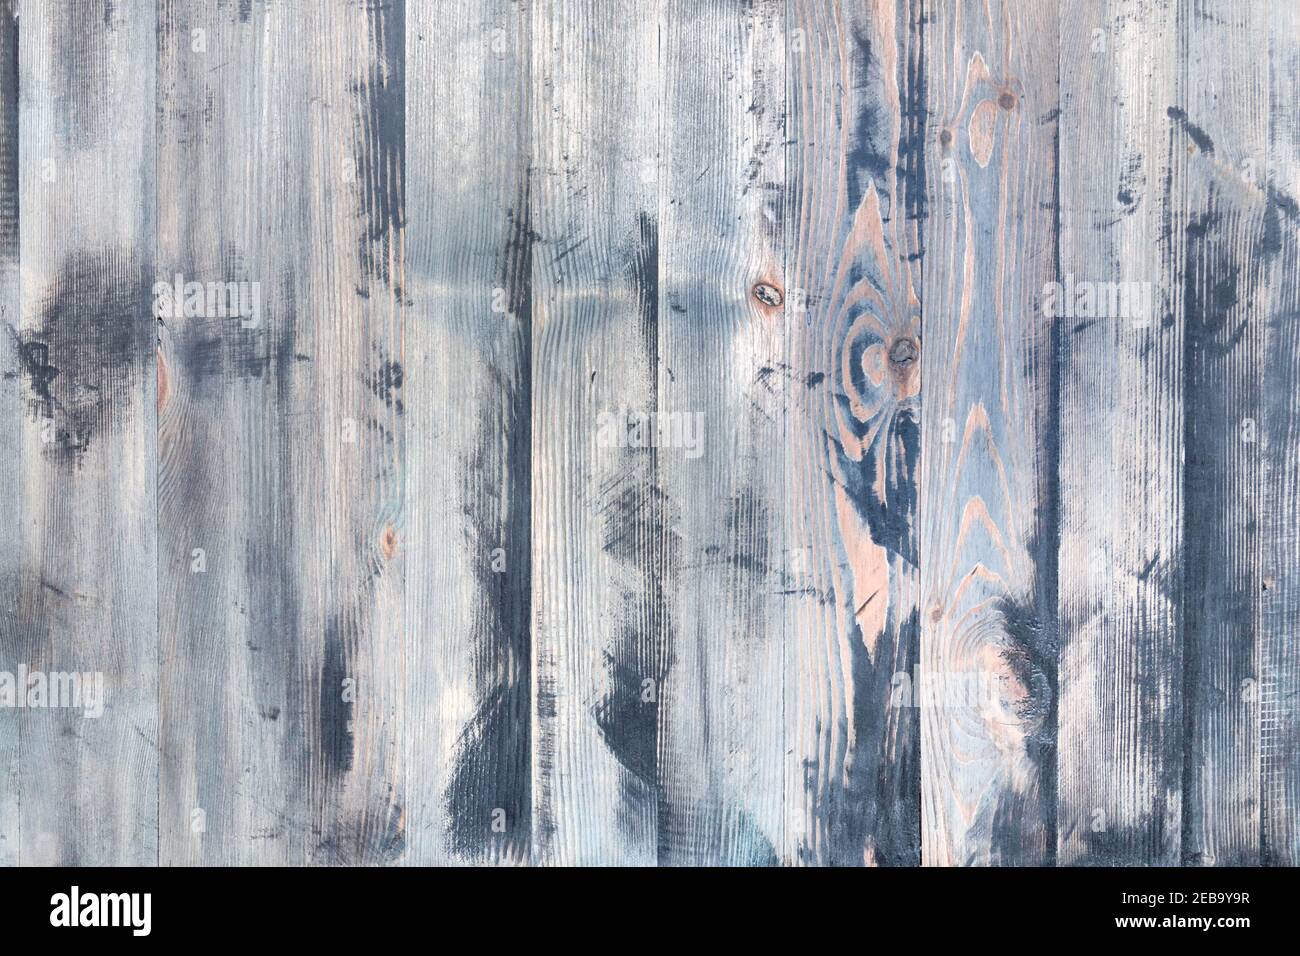 Verblasste Vintage hellgrau Farbe Holz Hintergrund. Verwitterter grauer  Hintergrund. Holzstruktur Stockfotografie - Alamy